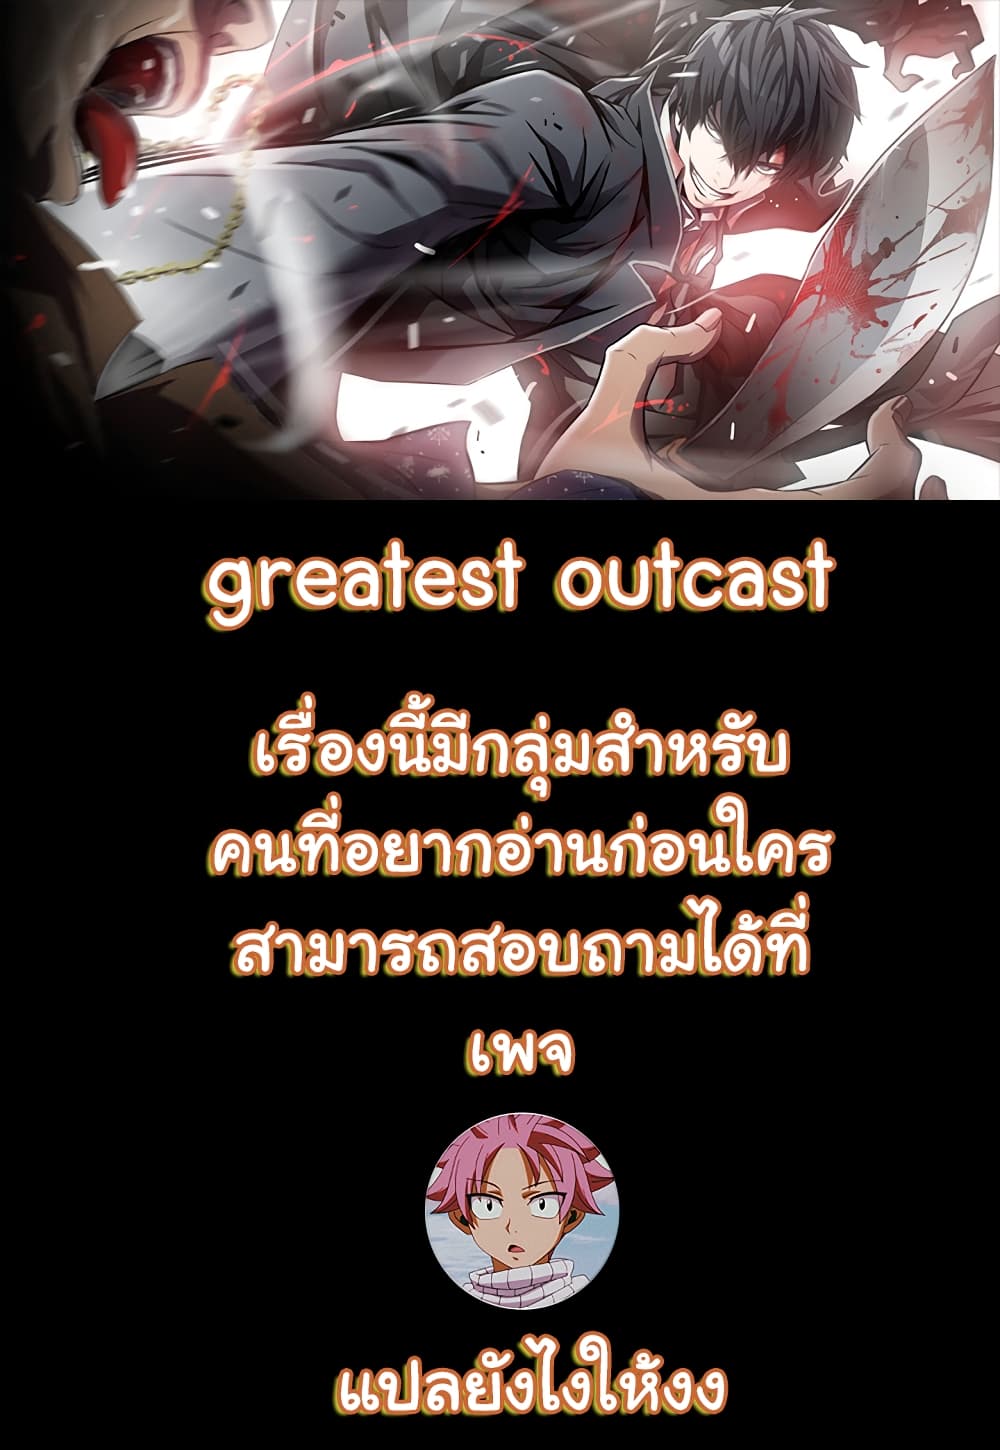 Greatest Outcast 1 (1)